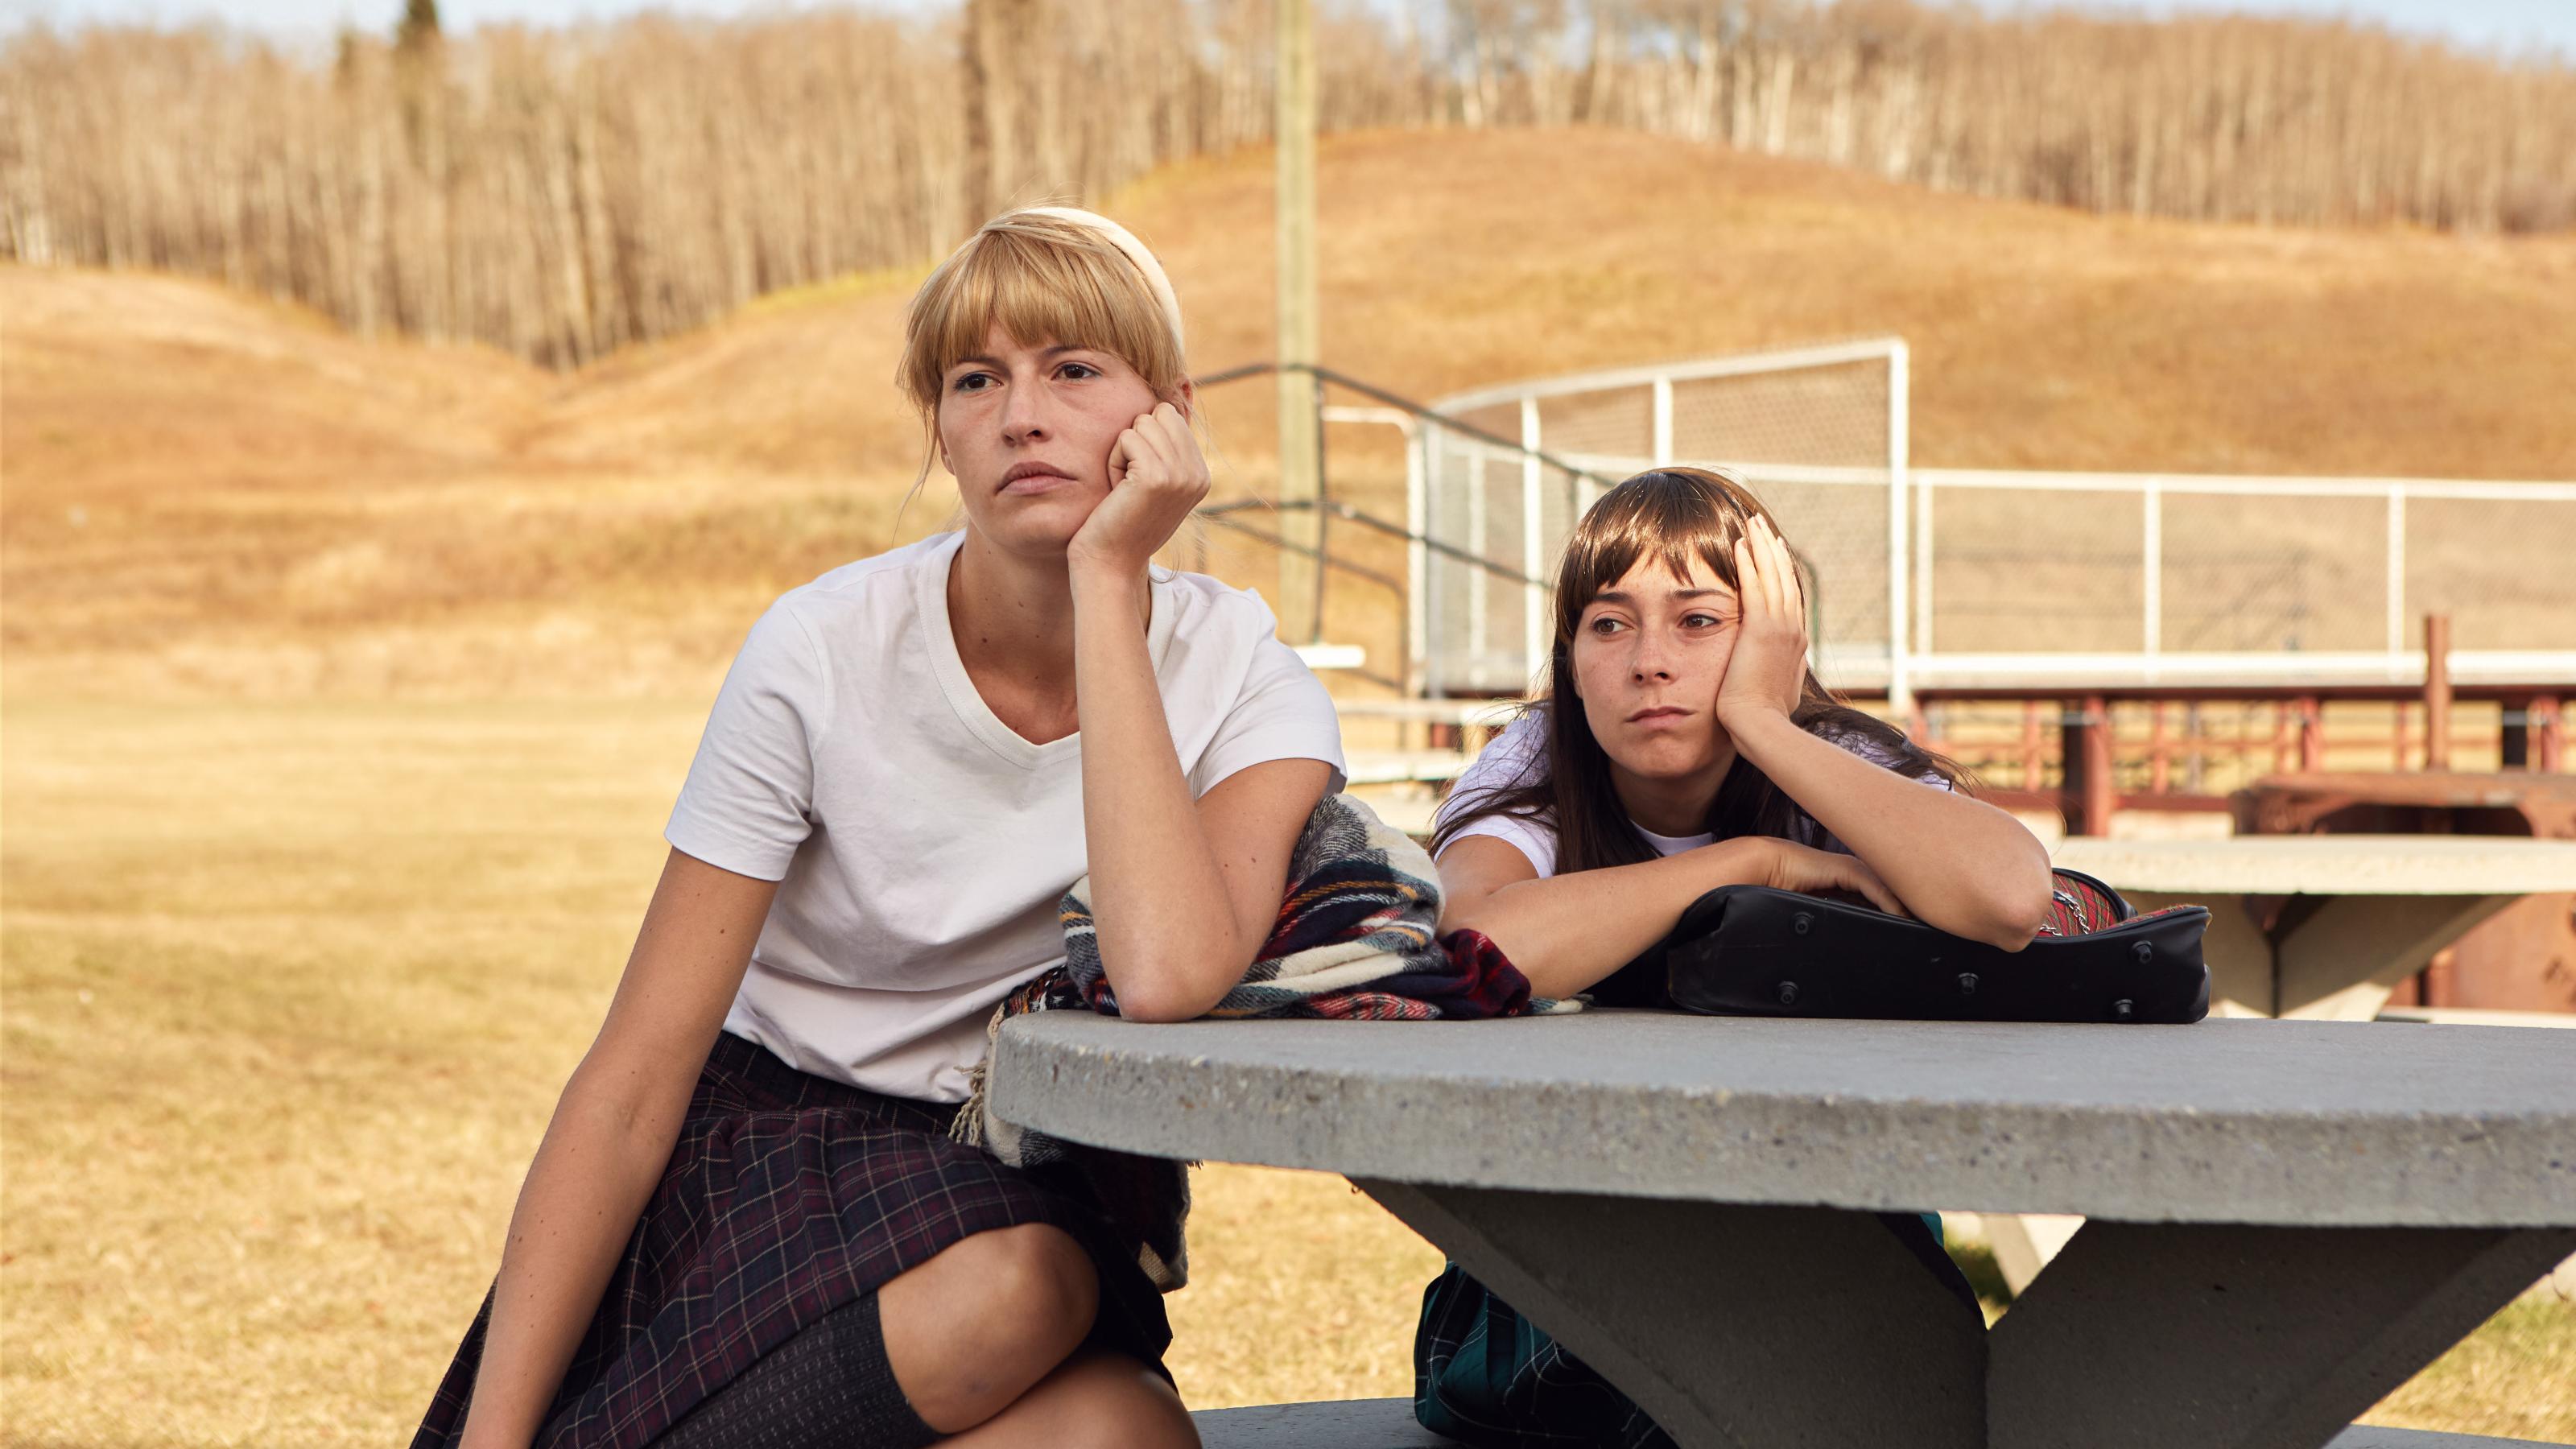 Zwei junge Frauen sitzen auf einem der Geräte eines leeren Spielplatzes und schauen in die Kamera.